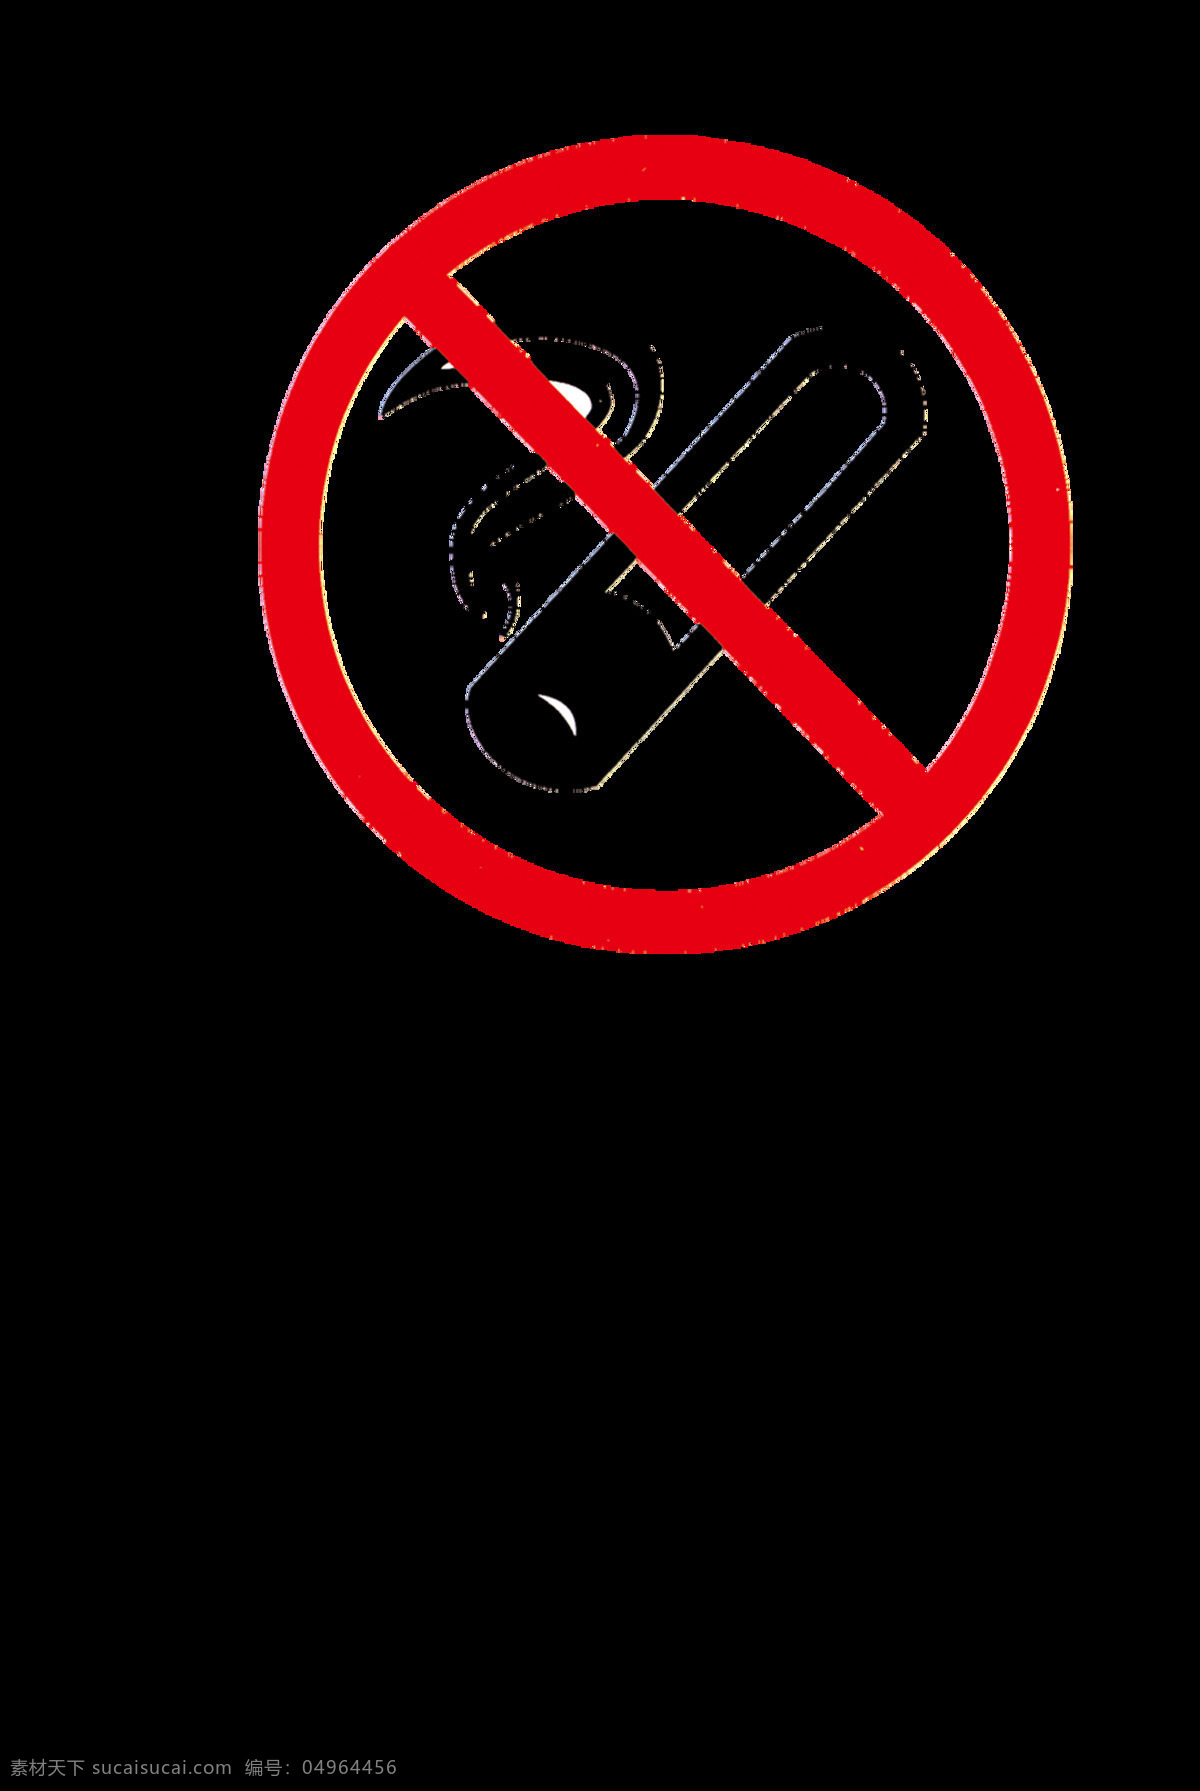 禁止吸烟图片 禁止吸烟 禁止吸烟标志 禁止吸烟样式 禁止吸烟模版 戒烟 温馨提示牌 企业标识牌 公司标识牌 温馨提示标牌 禁烟控烟 请勿吸烟 温馨提示 请勿吸烟标志 请勿吸烟样式 请勿吸烟牌 吸烟牌 禁止牌 禁止吸烟牌 不准吸烟 吸烟有害健康 公共标识标志